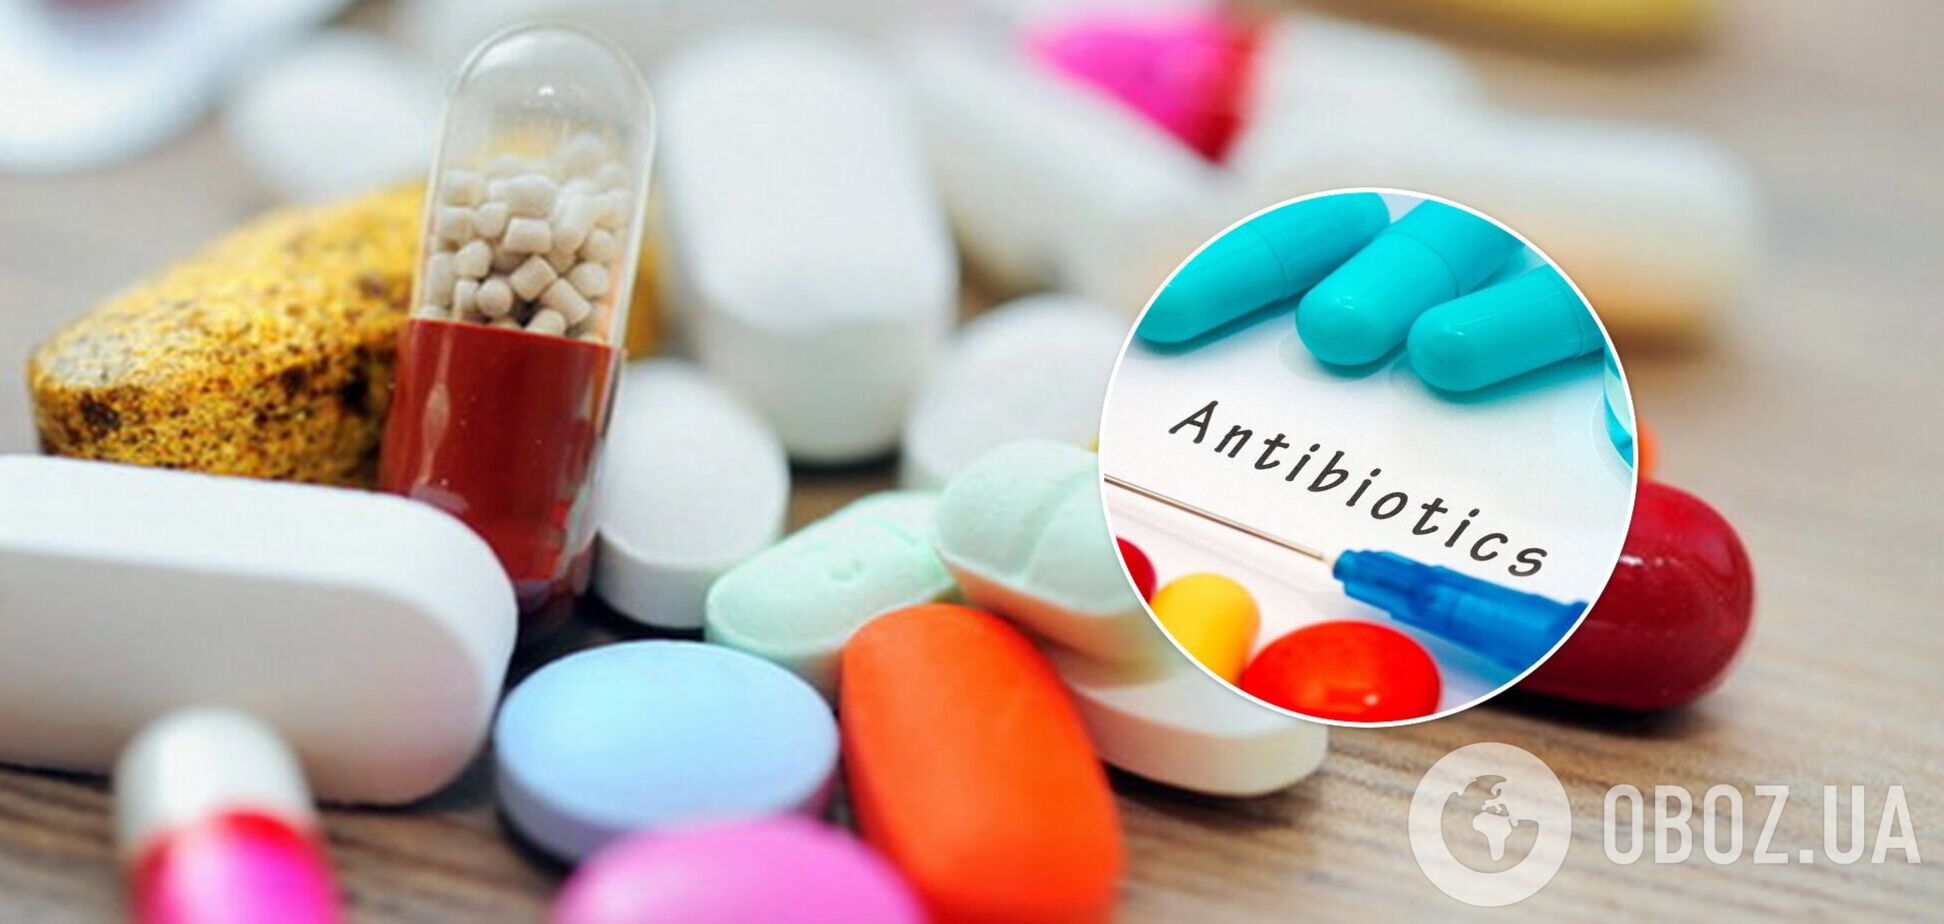 Антибиотики в Украине будут продавать по е-рецепту: как его получить